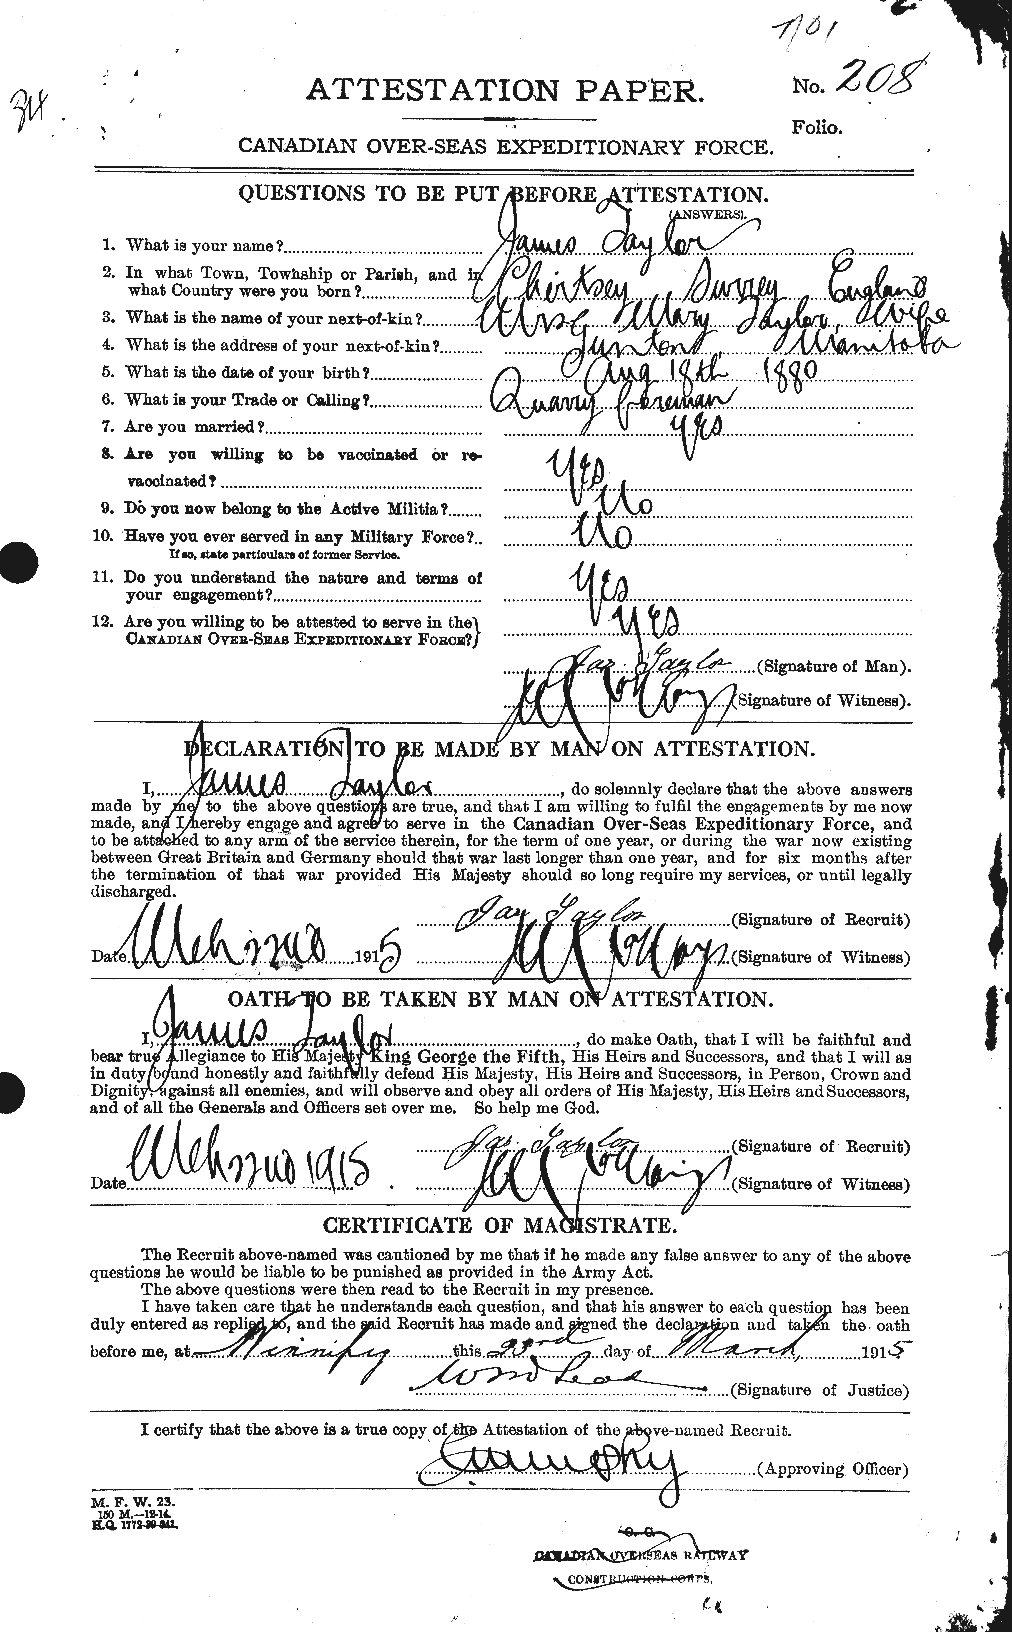 Dossiers du Personnel de la Première Guerre mondiale - CEC 626660a